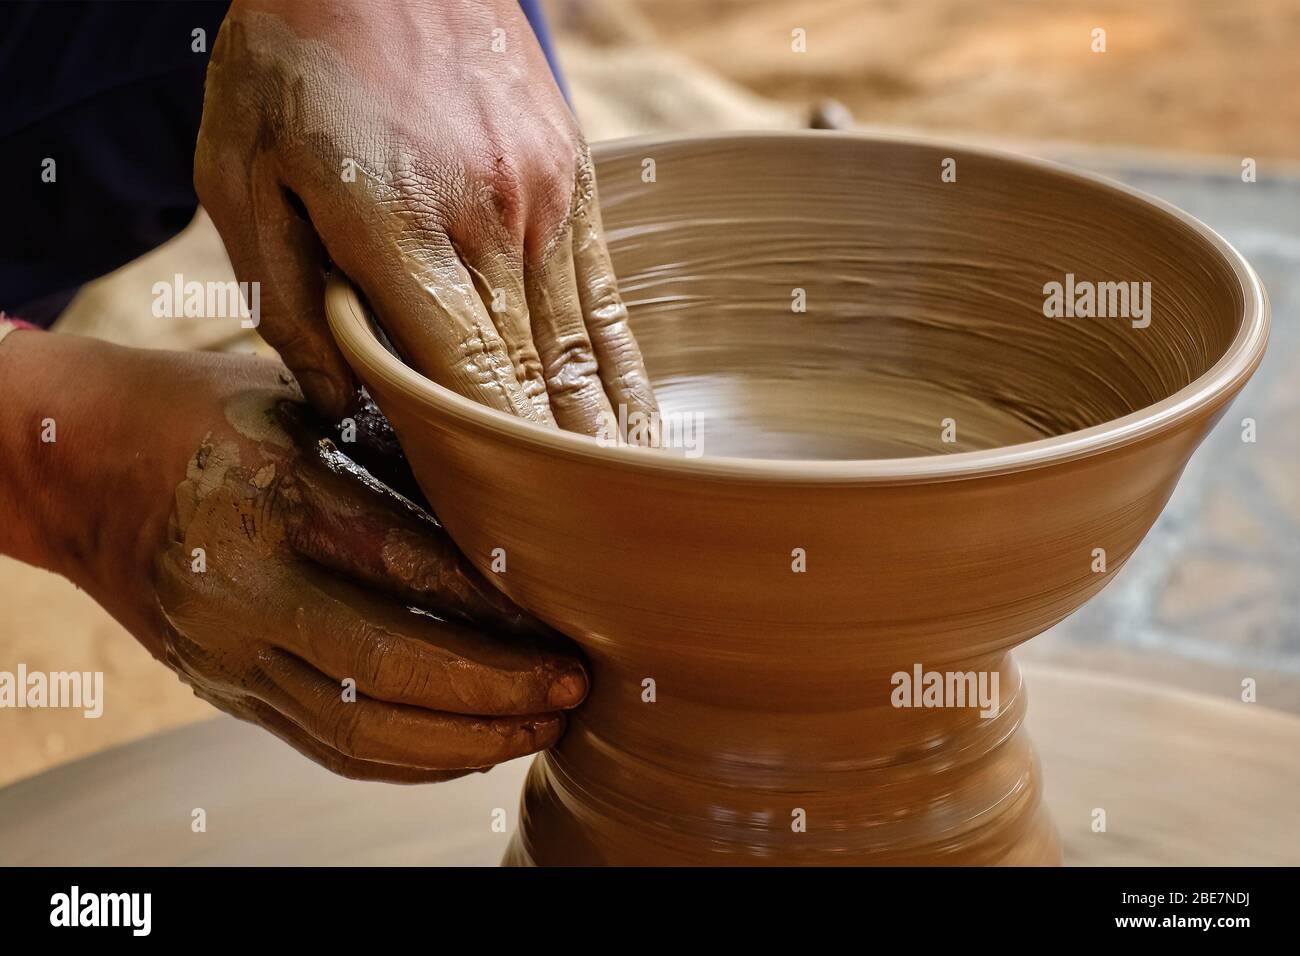 Töpferei - qualifizierte nasse Hände von Töpfer Formen den Ton auf  Töpferscheibe. Topf, Vase werfen. Herstellung traditioneller Handarbeit  indische Schüssel, Glas, Topf Stockfotografie - Alamy